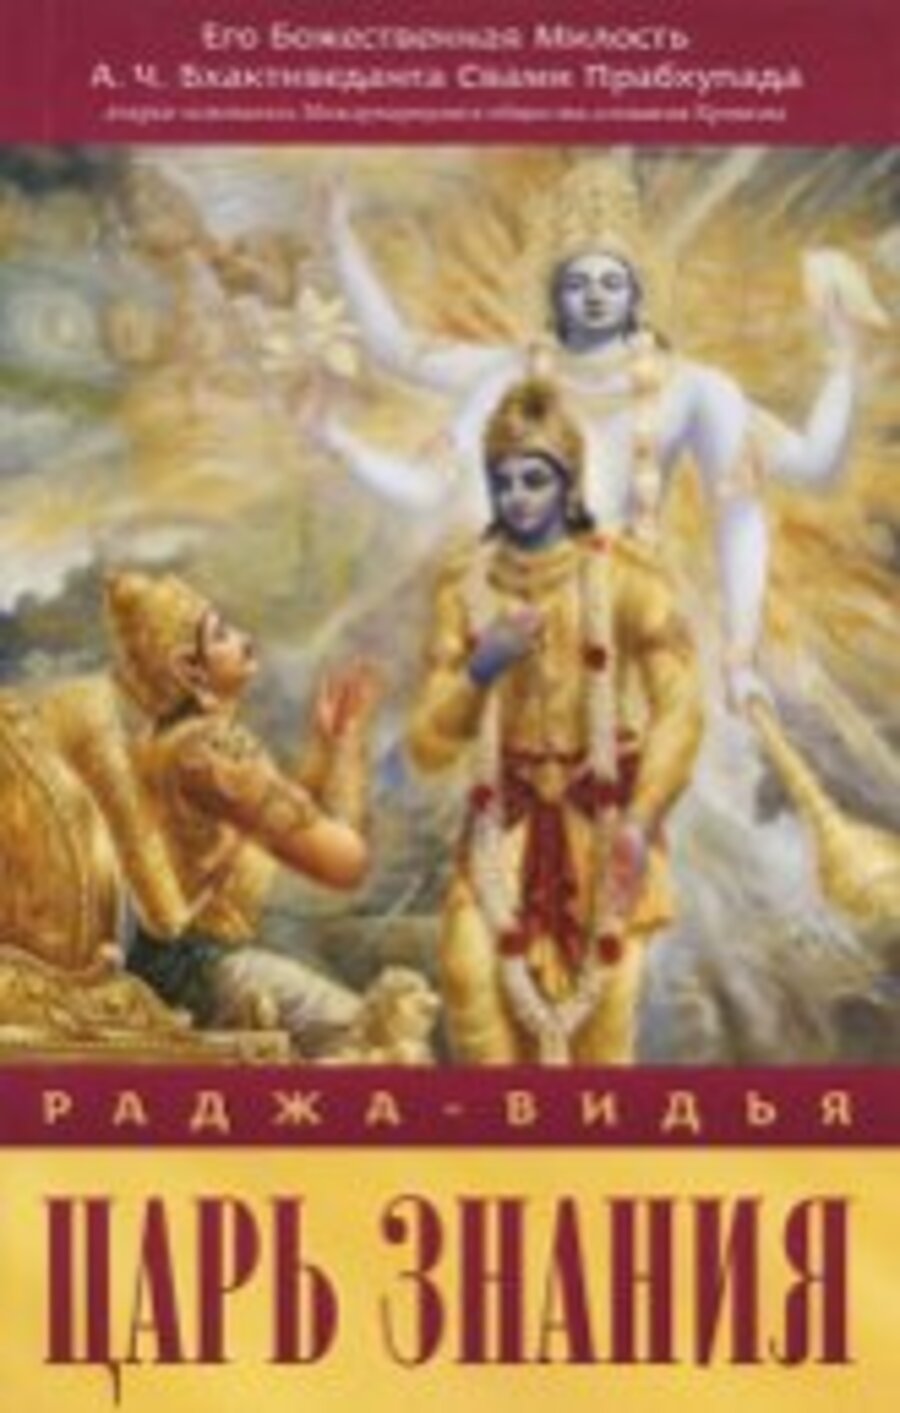 Купить книгу Раджа-видья — царь знания А. Ч. Бхактиведанта Свами Прабхупада в интернет-магазине Ариаварта